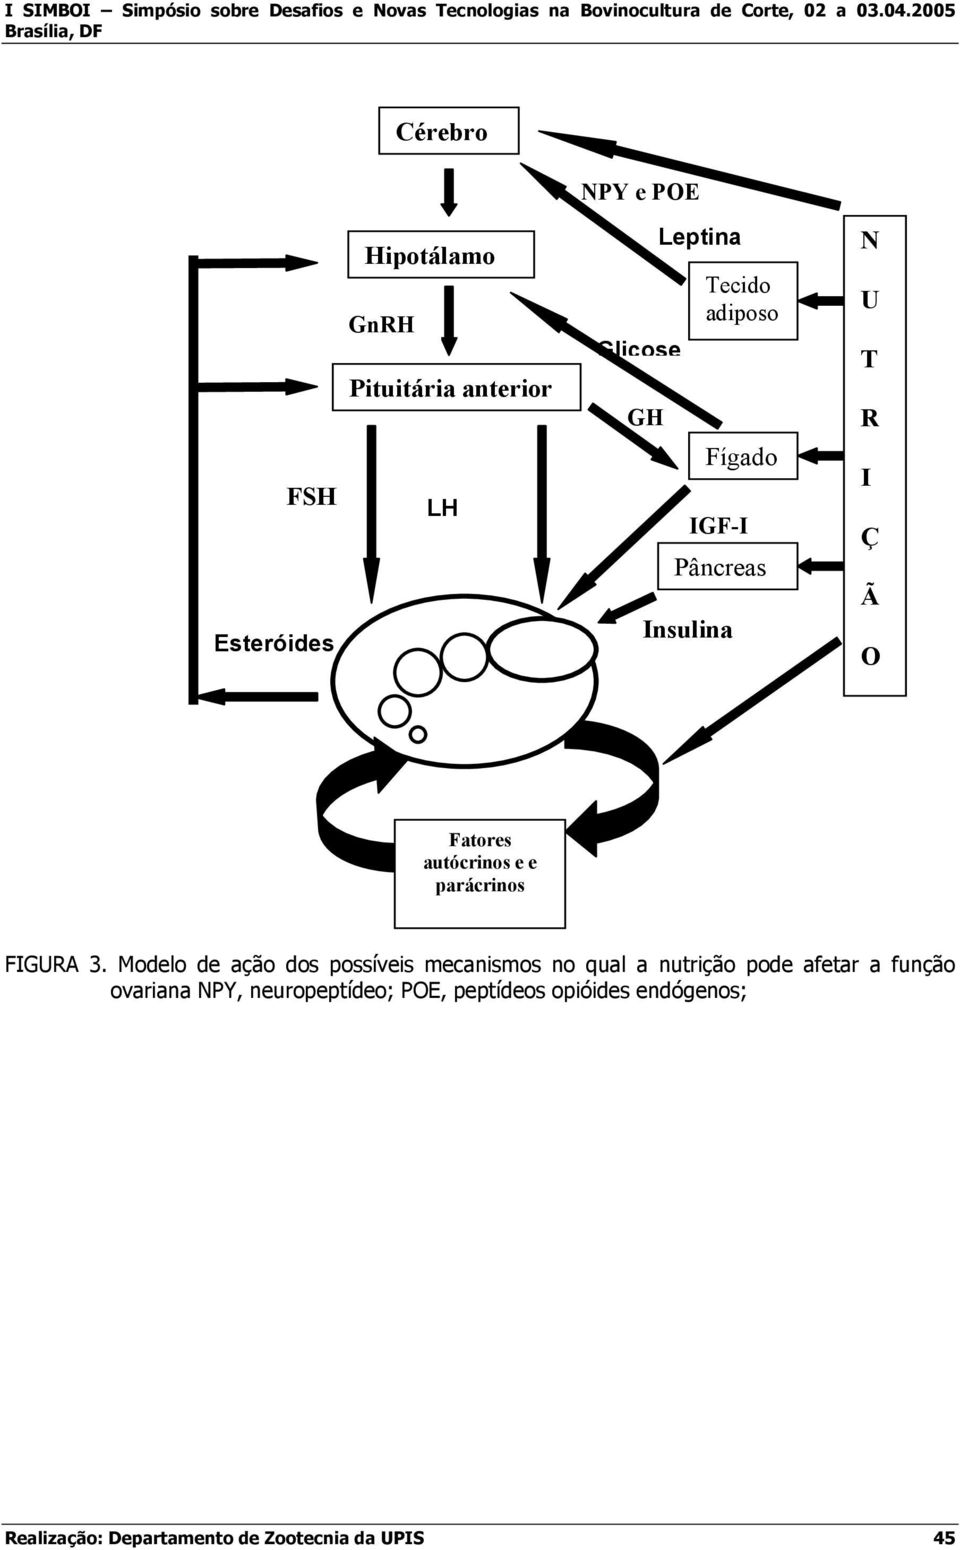 3. Modelo de ação dos possíveis mecanismos no qual a nutrição pode afetar a função ovariana NPY,